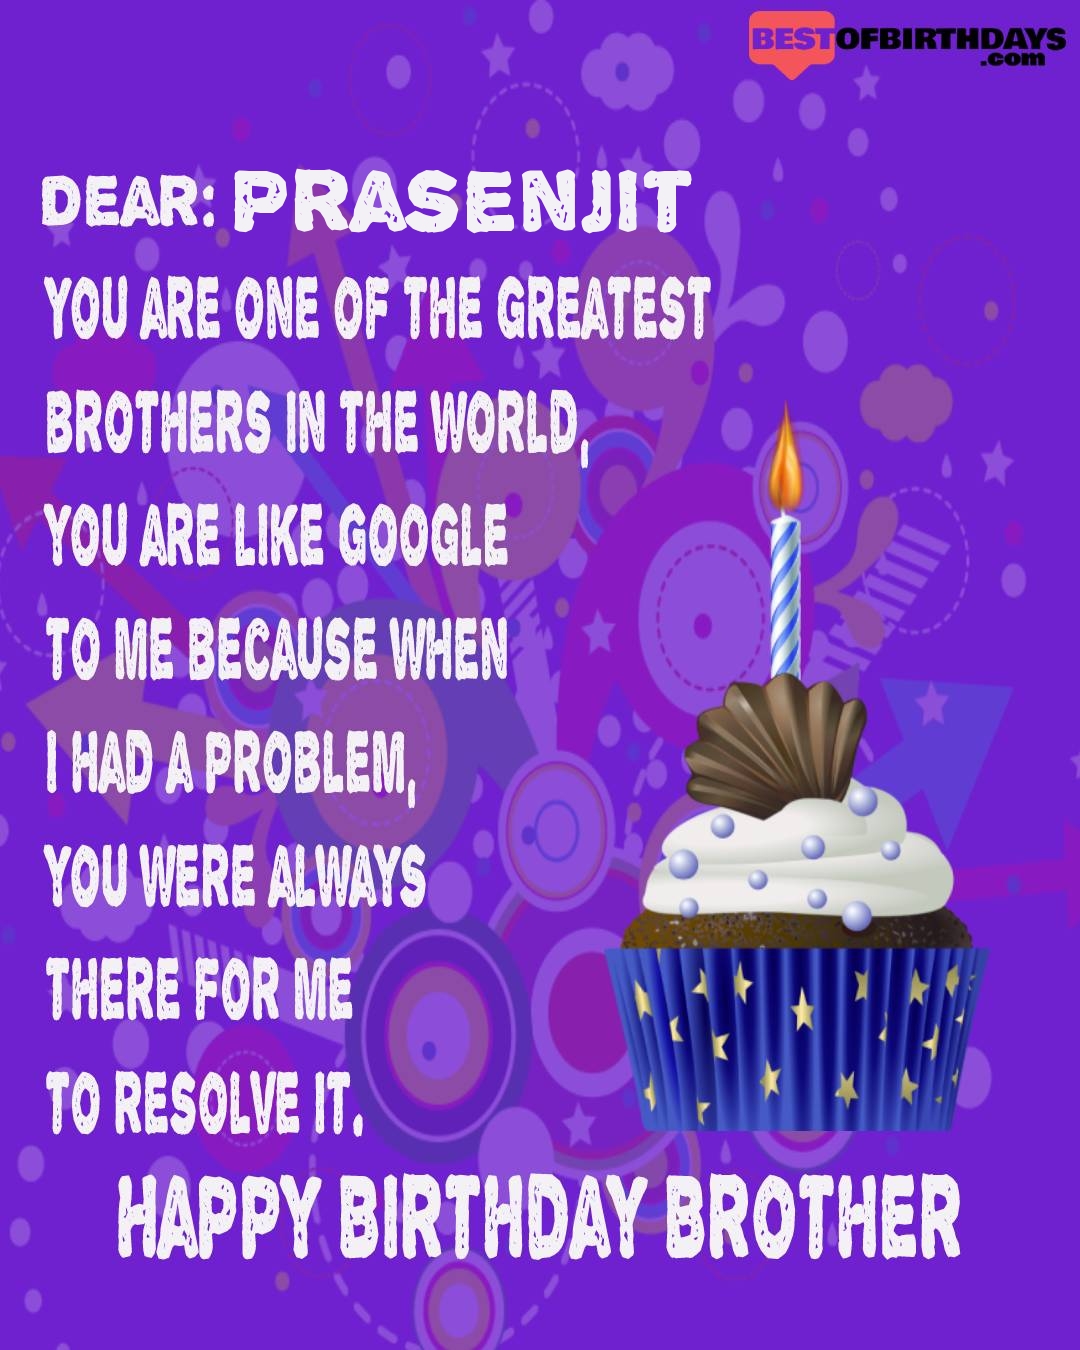 Happy birthday prasenjit bhai brother bro